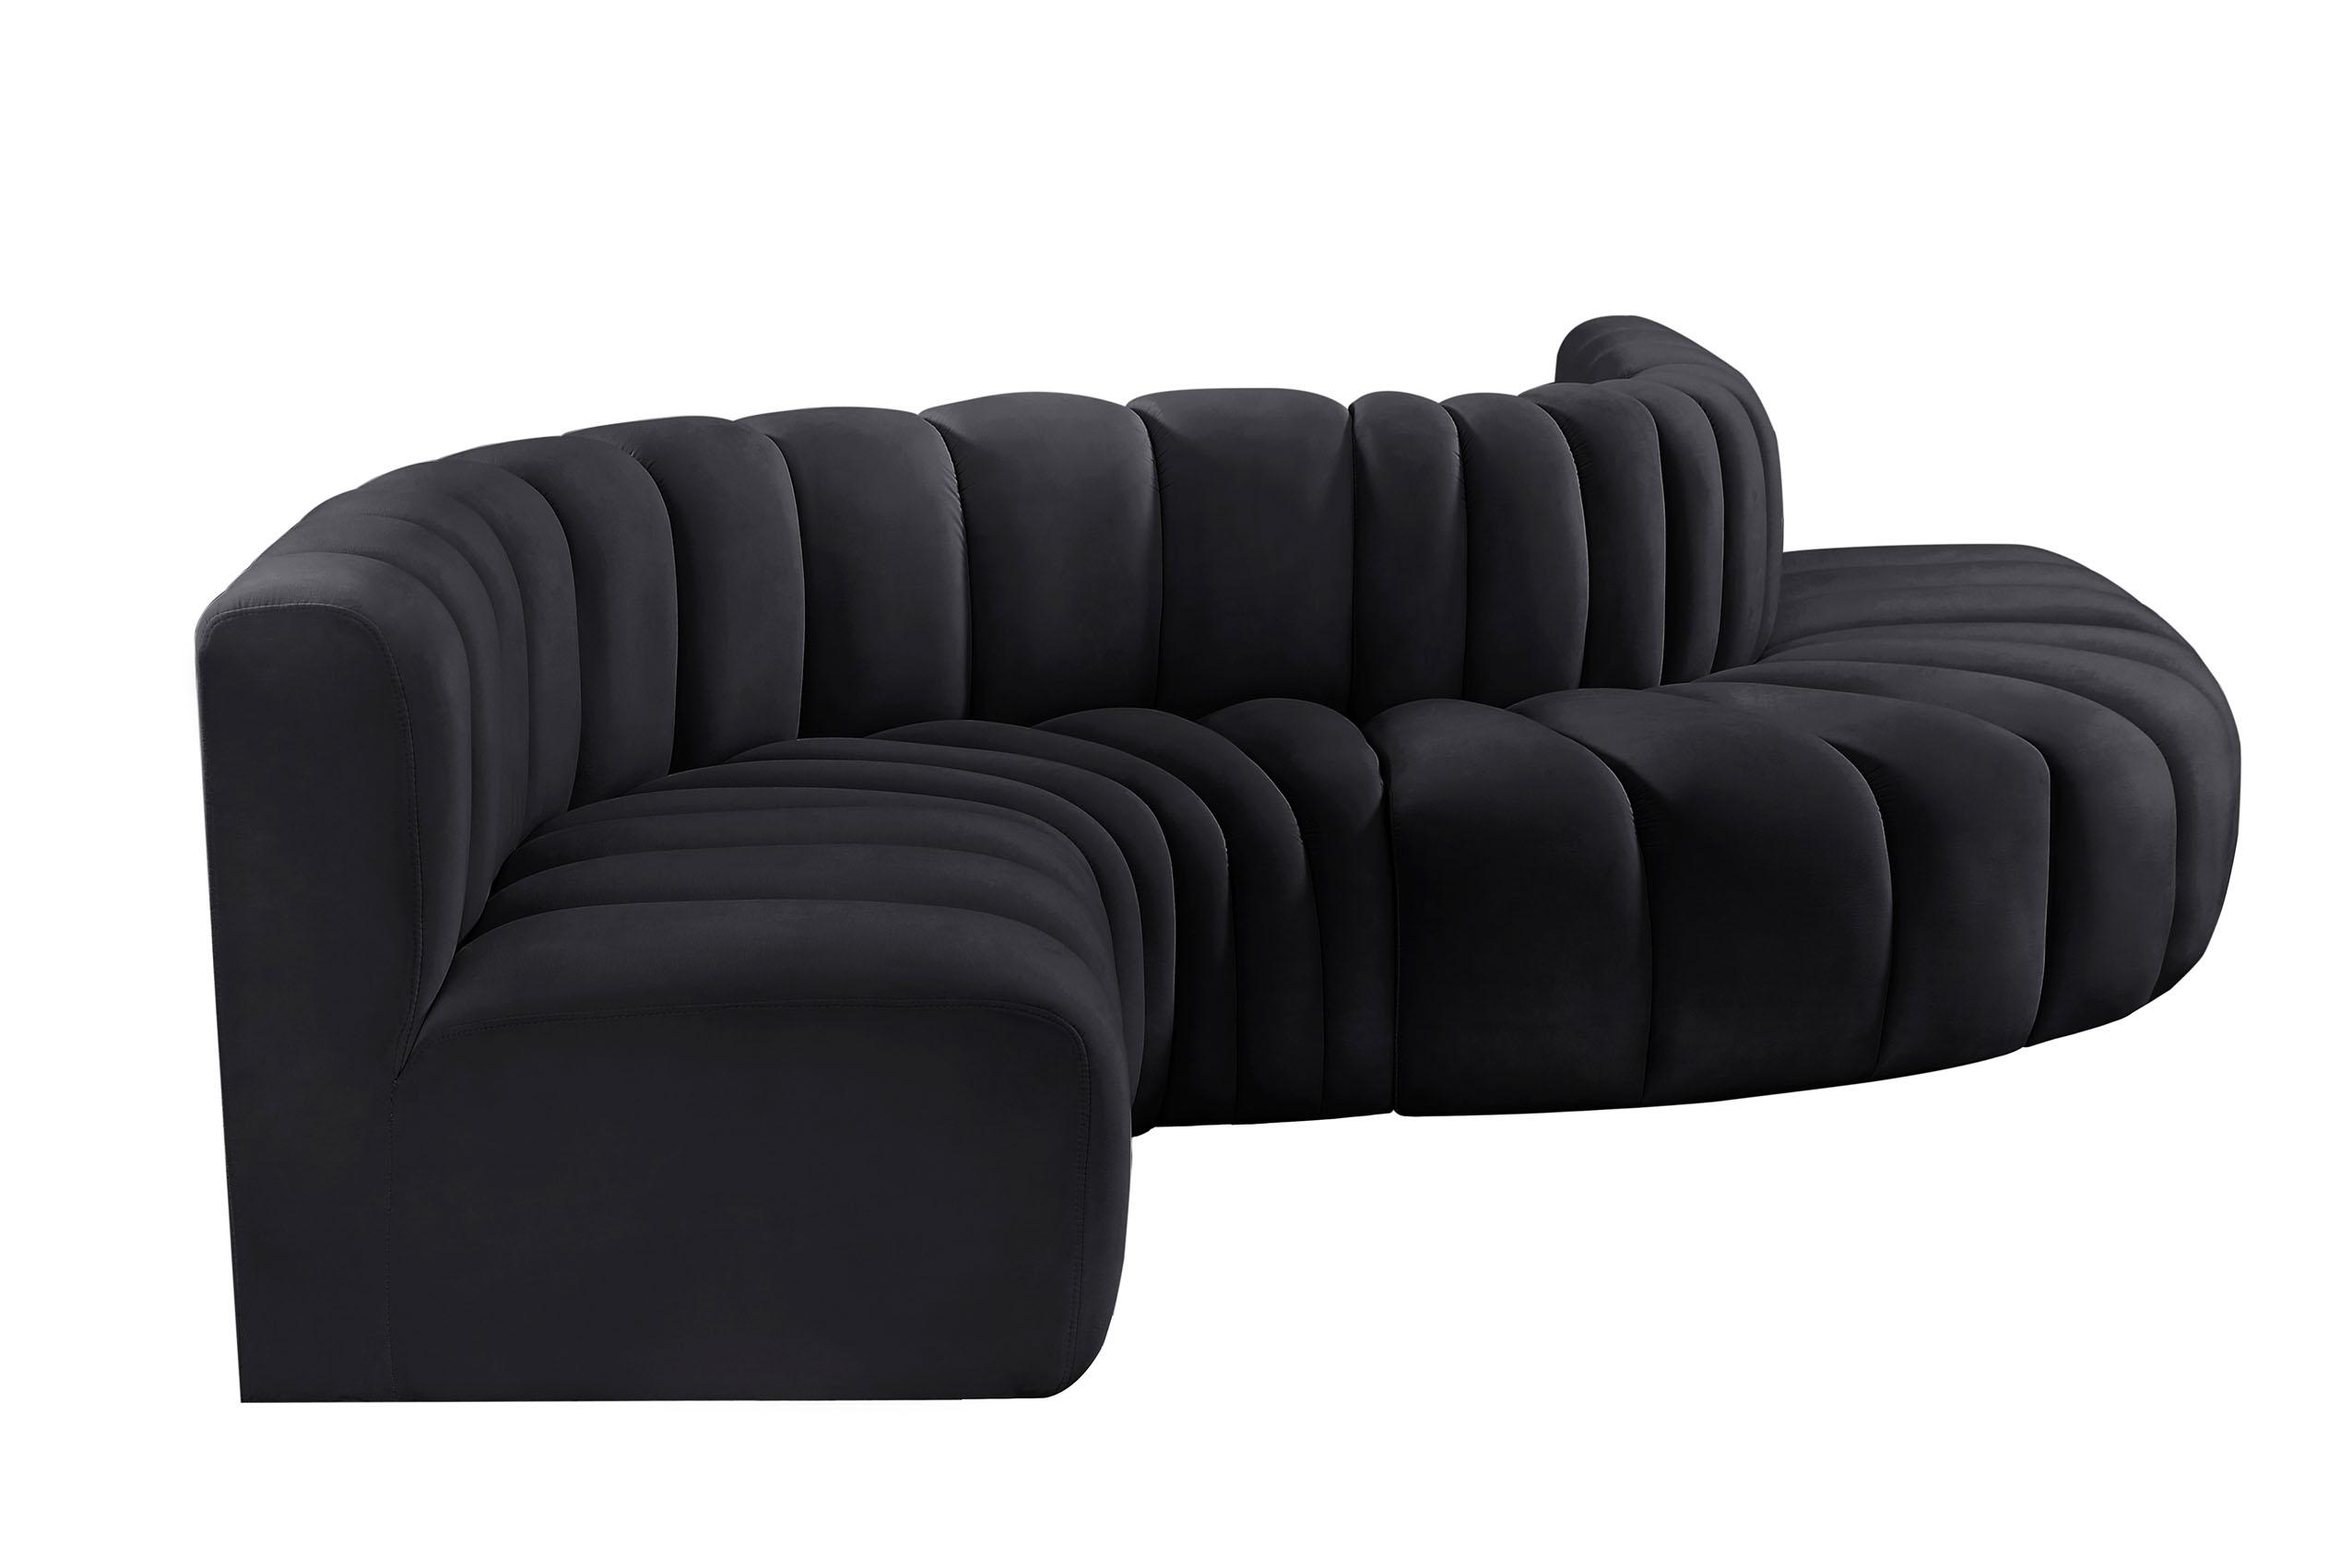 

    
103Black-S6A Meridian Furniture Modular Sectional Sofa
